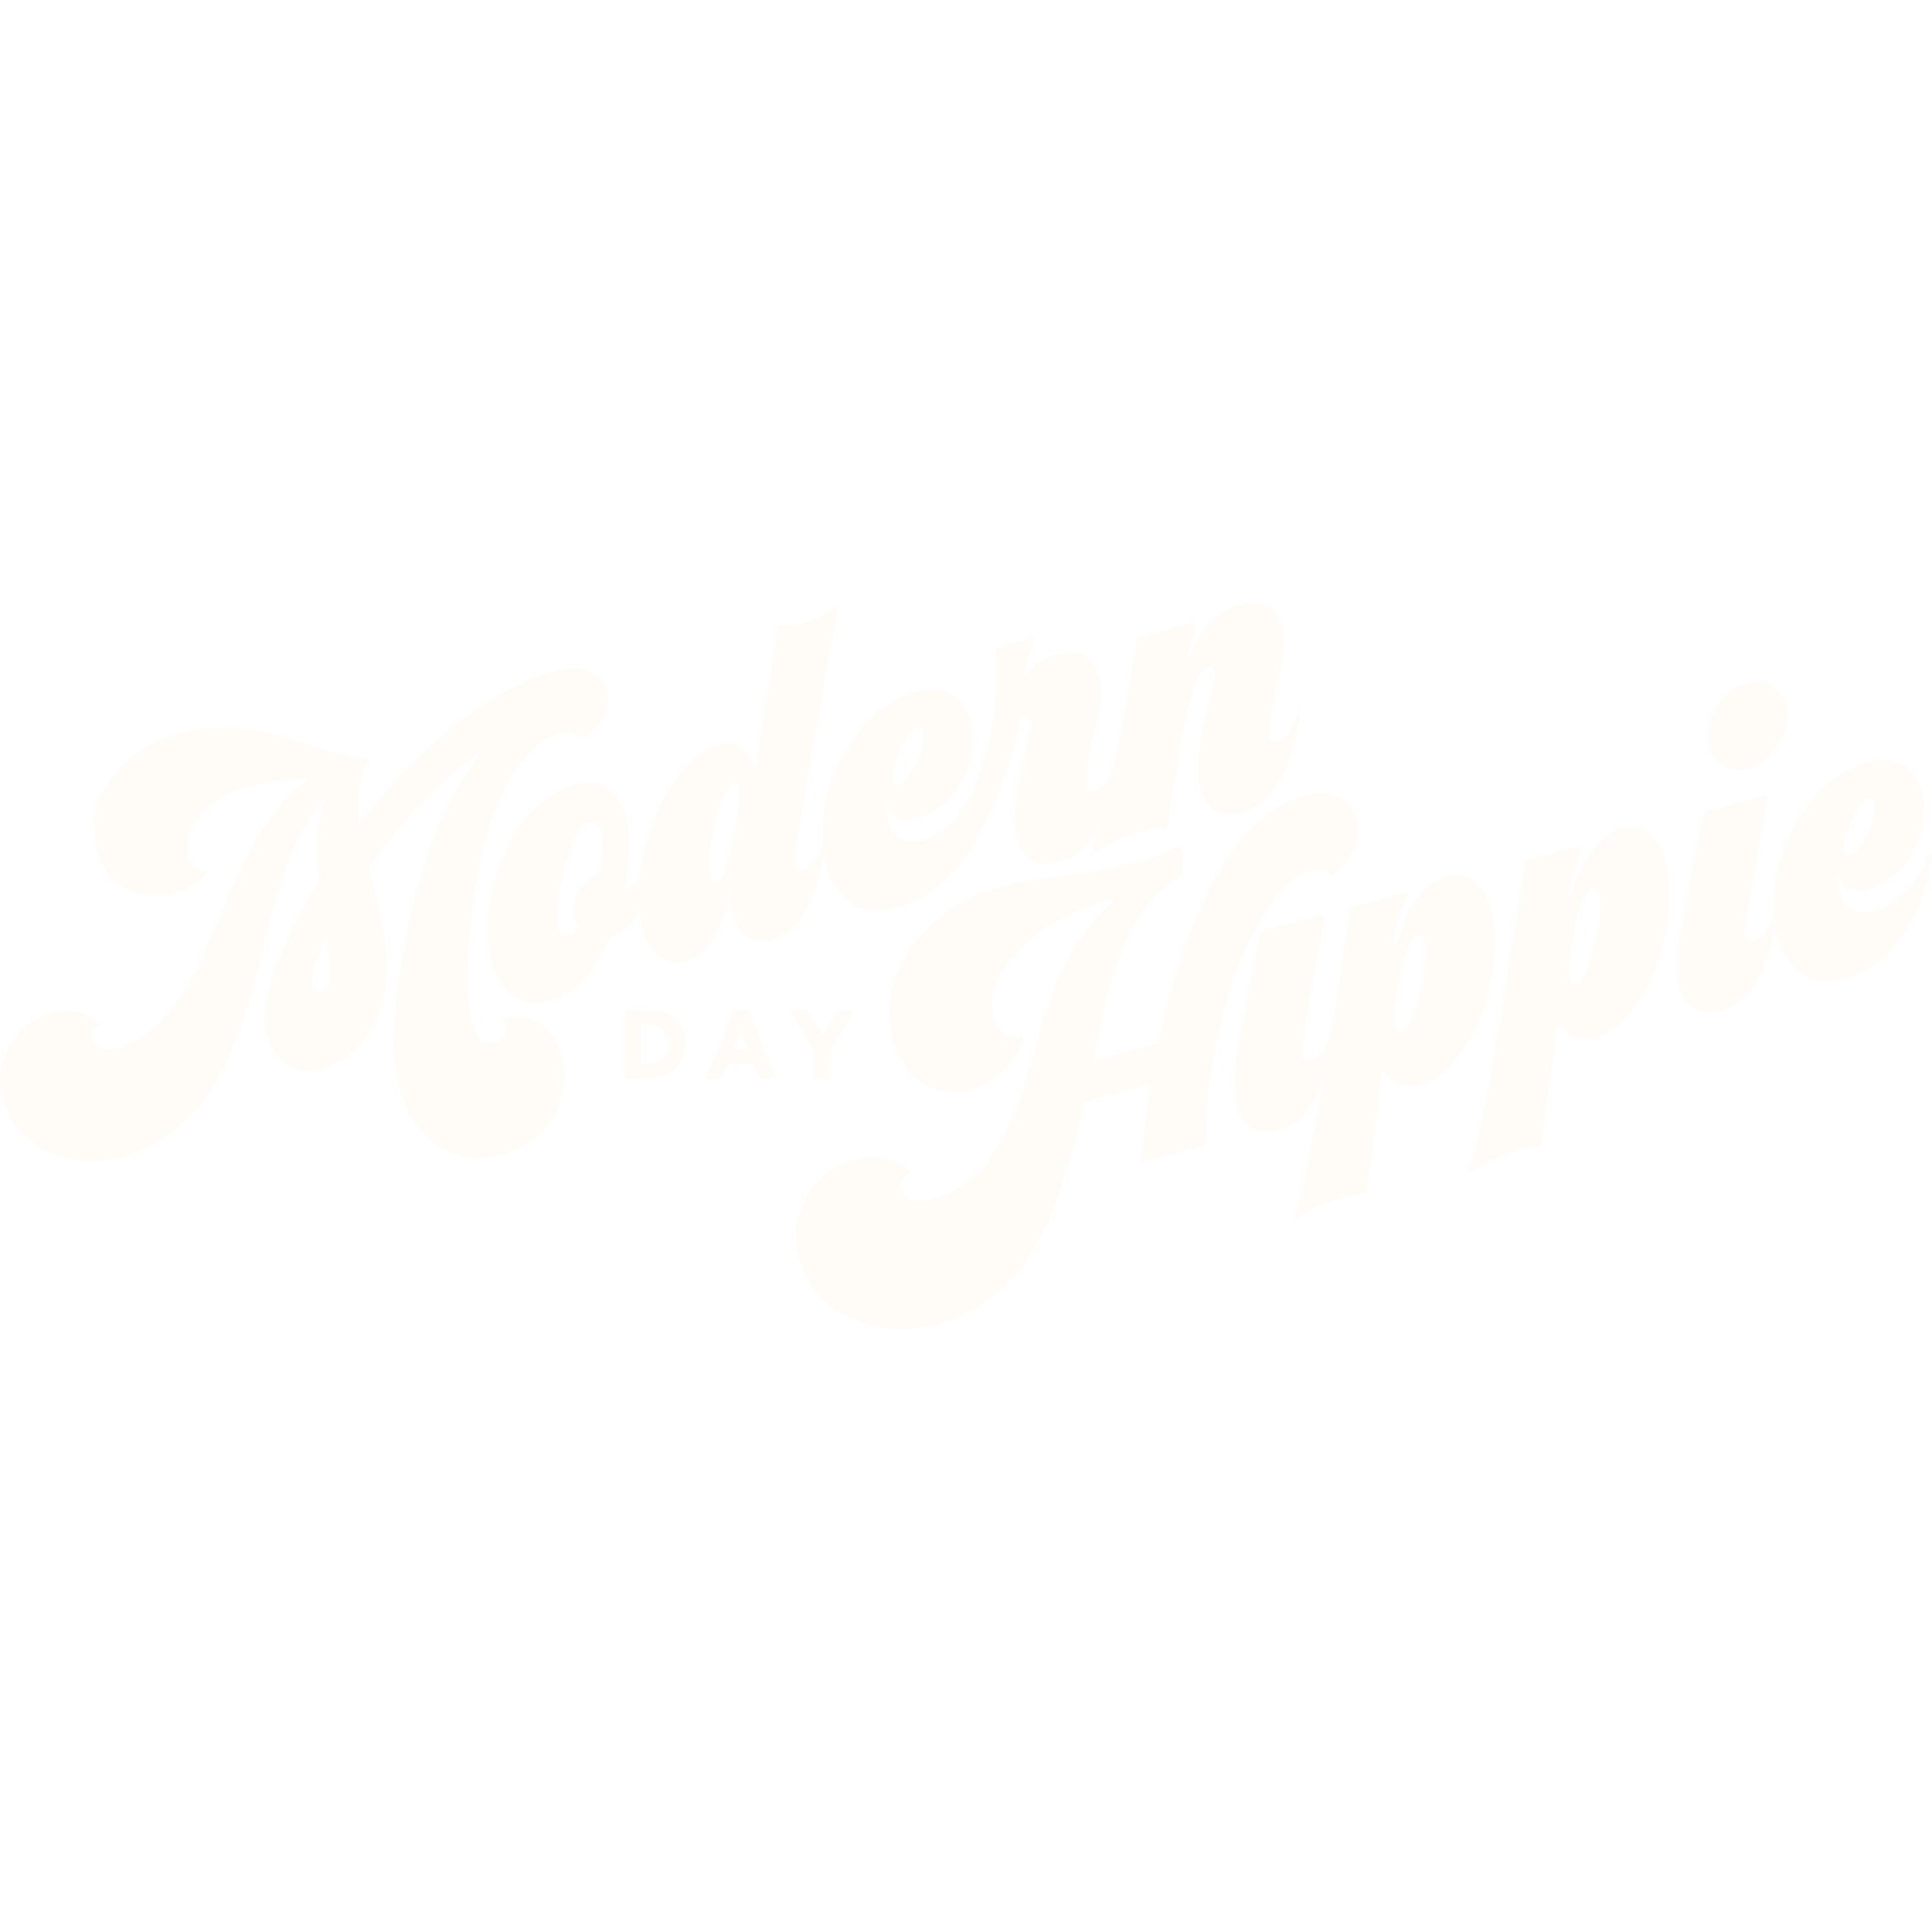 Modern Day Hippie